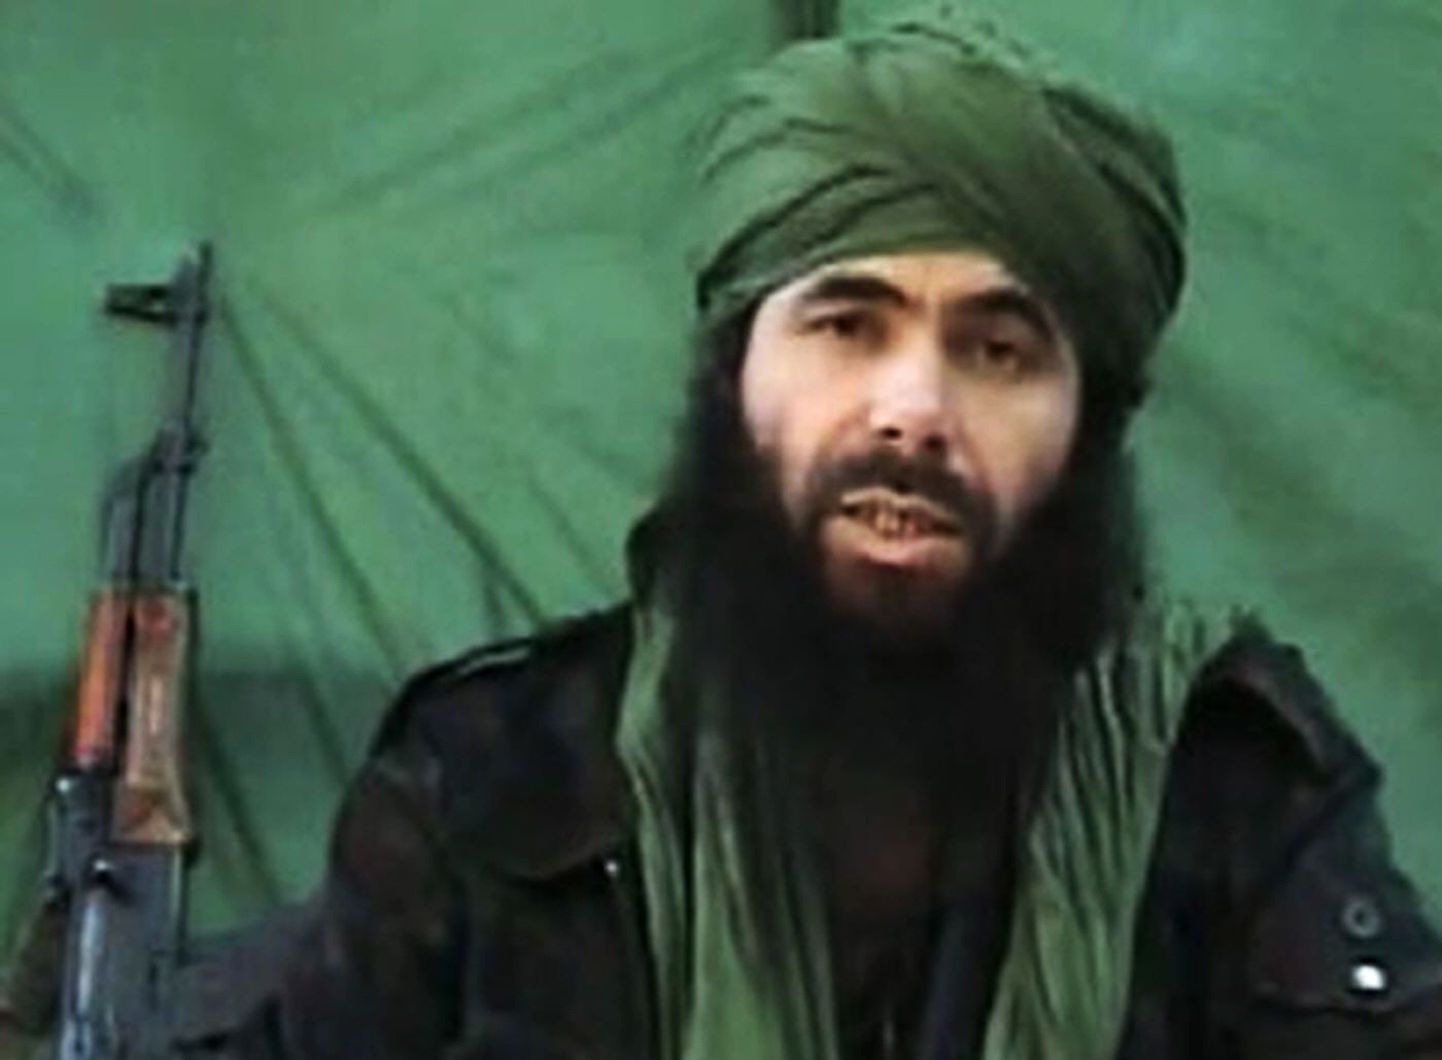 Al-Qaeda Põhja-Aafrika haru AQIMi liider Abu Musab Abdul Wadud